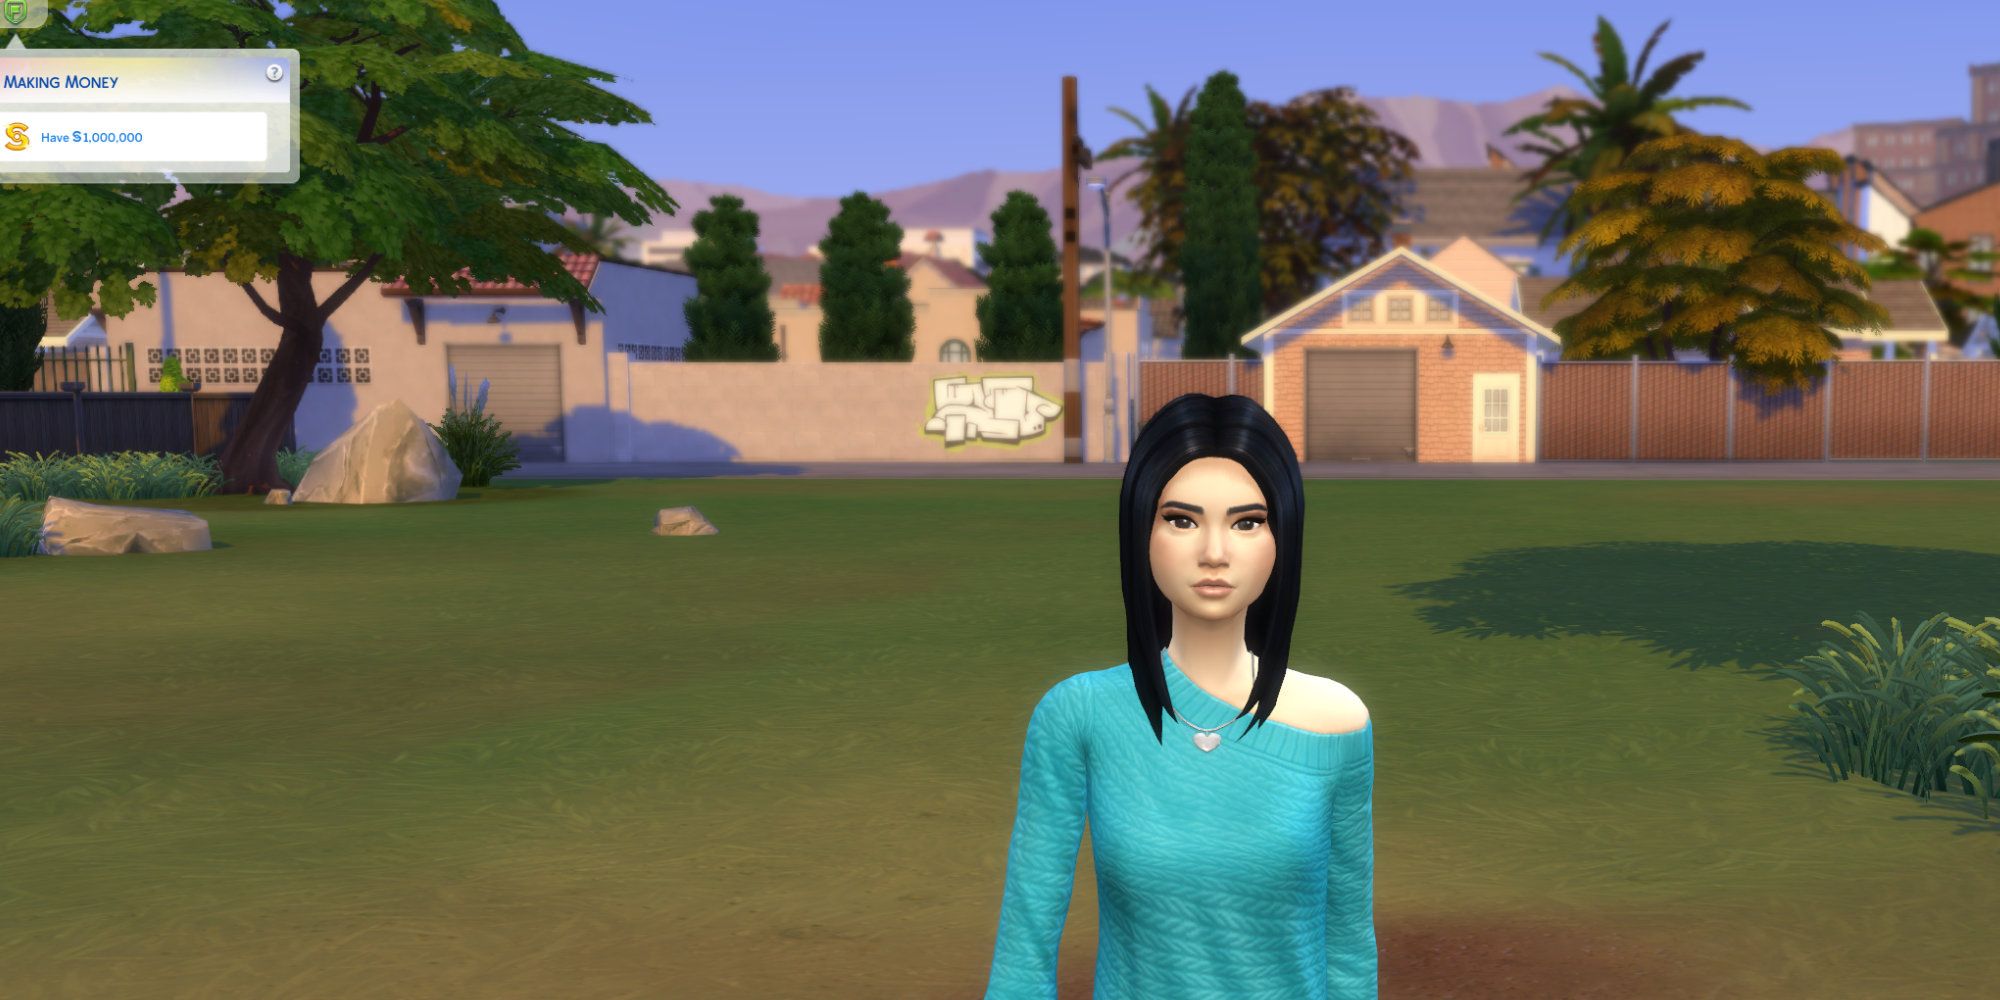 Sims 4 scenarios sim by empty lot in making money scenario